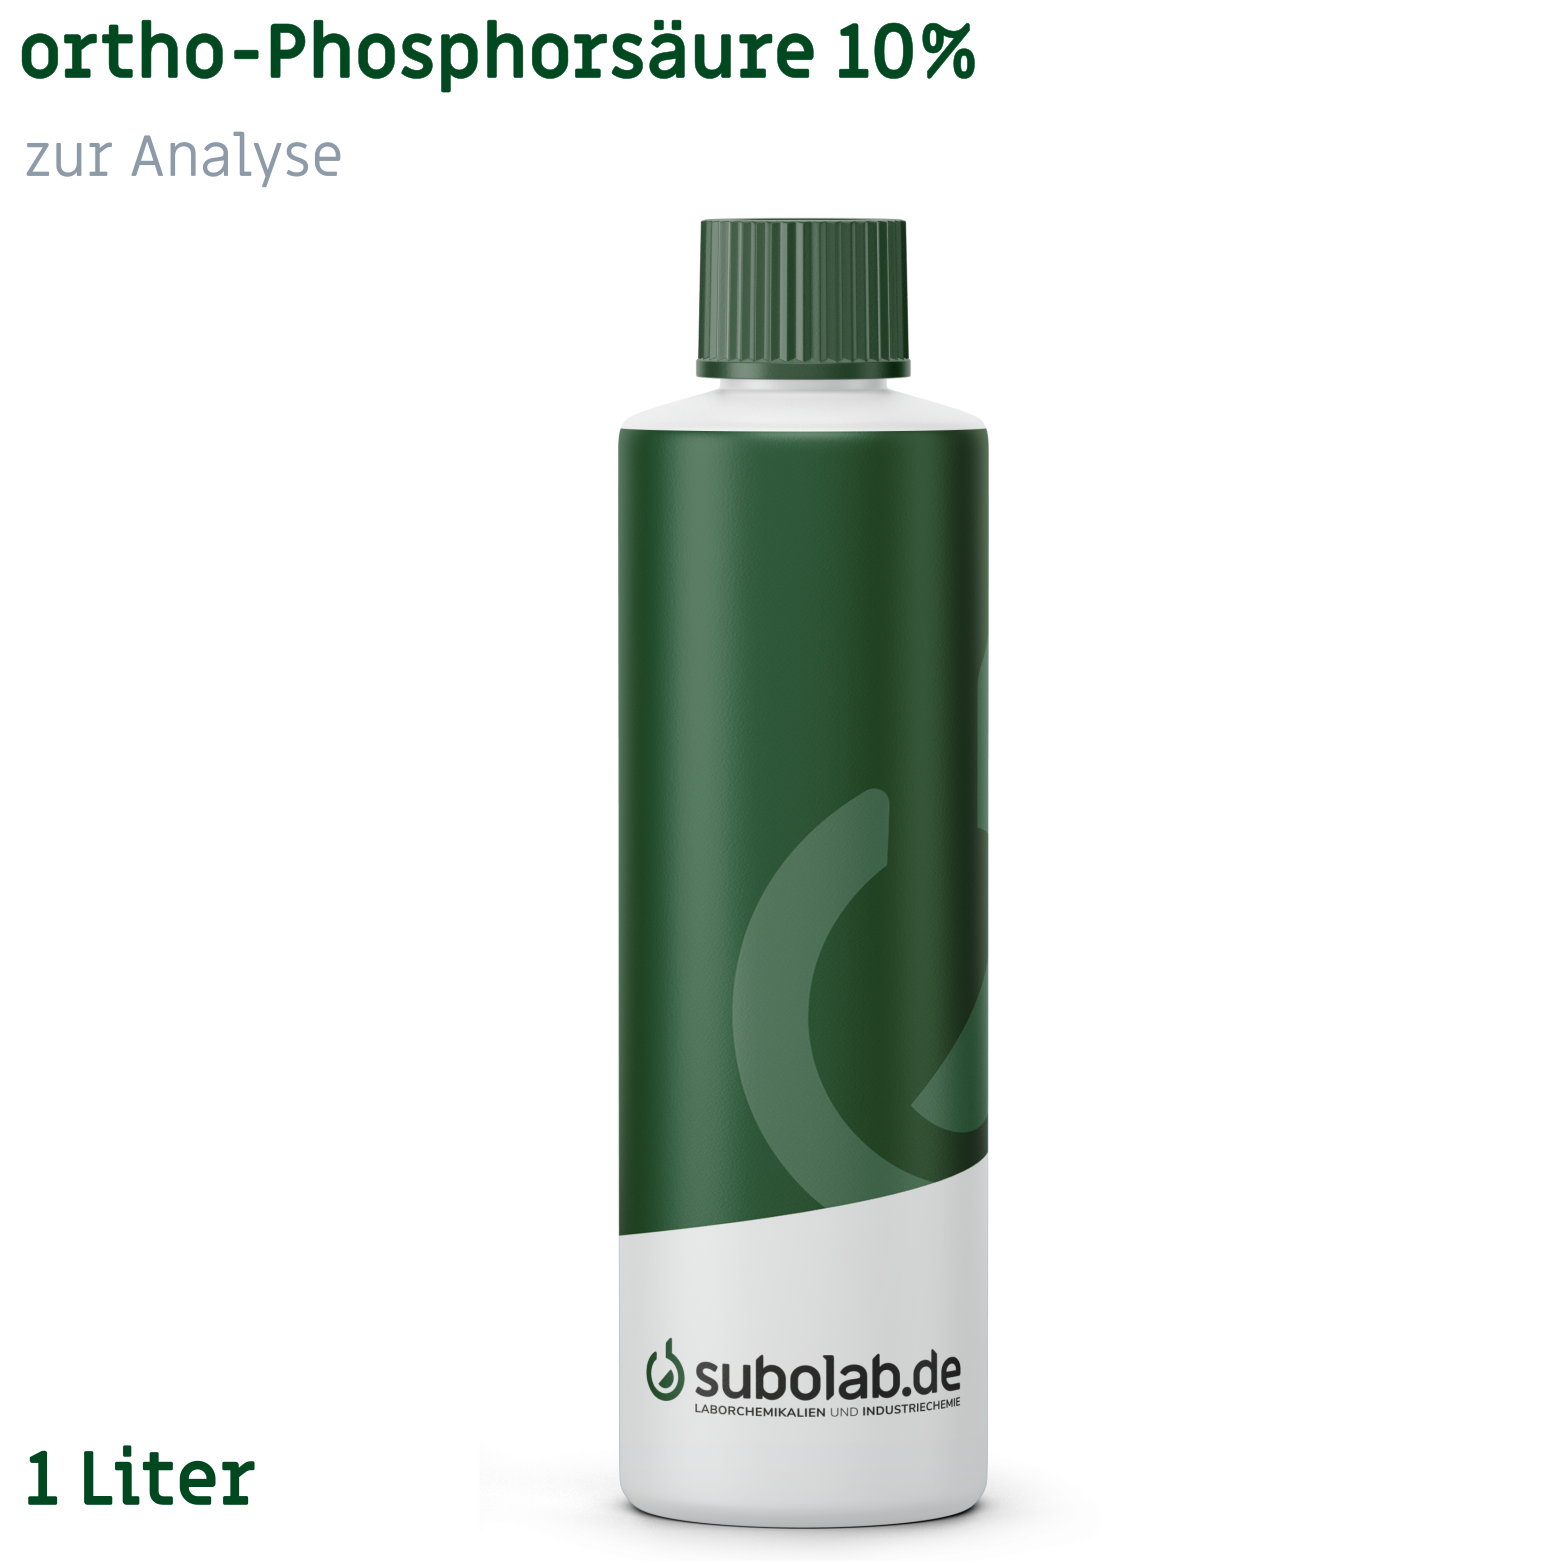 Bild von ortho-Phosphorsäure 10% zur Analyse (1 Liter)